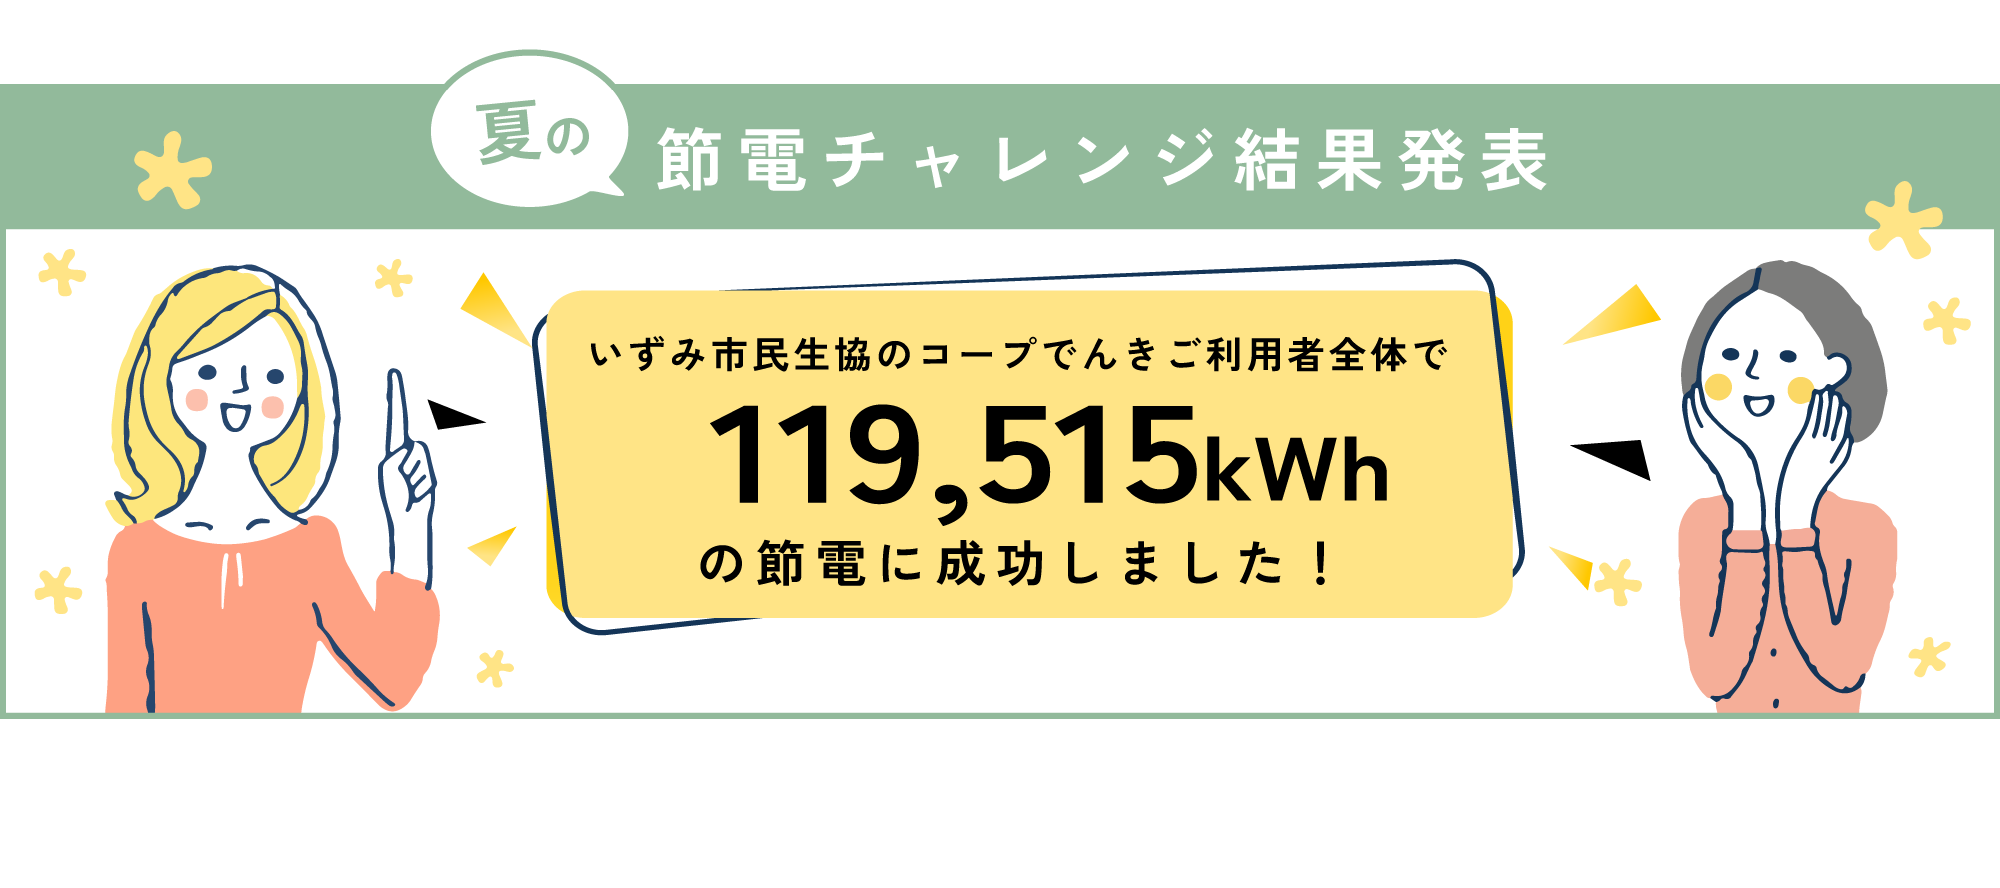 いずみ市民生協のコープでんきご利用者全体で119,515kWhの節電に成功しました！